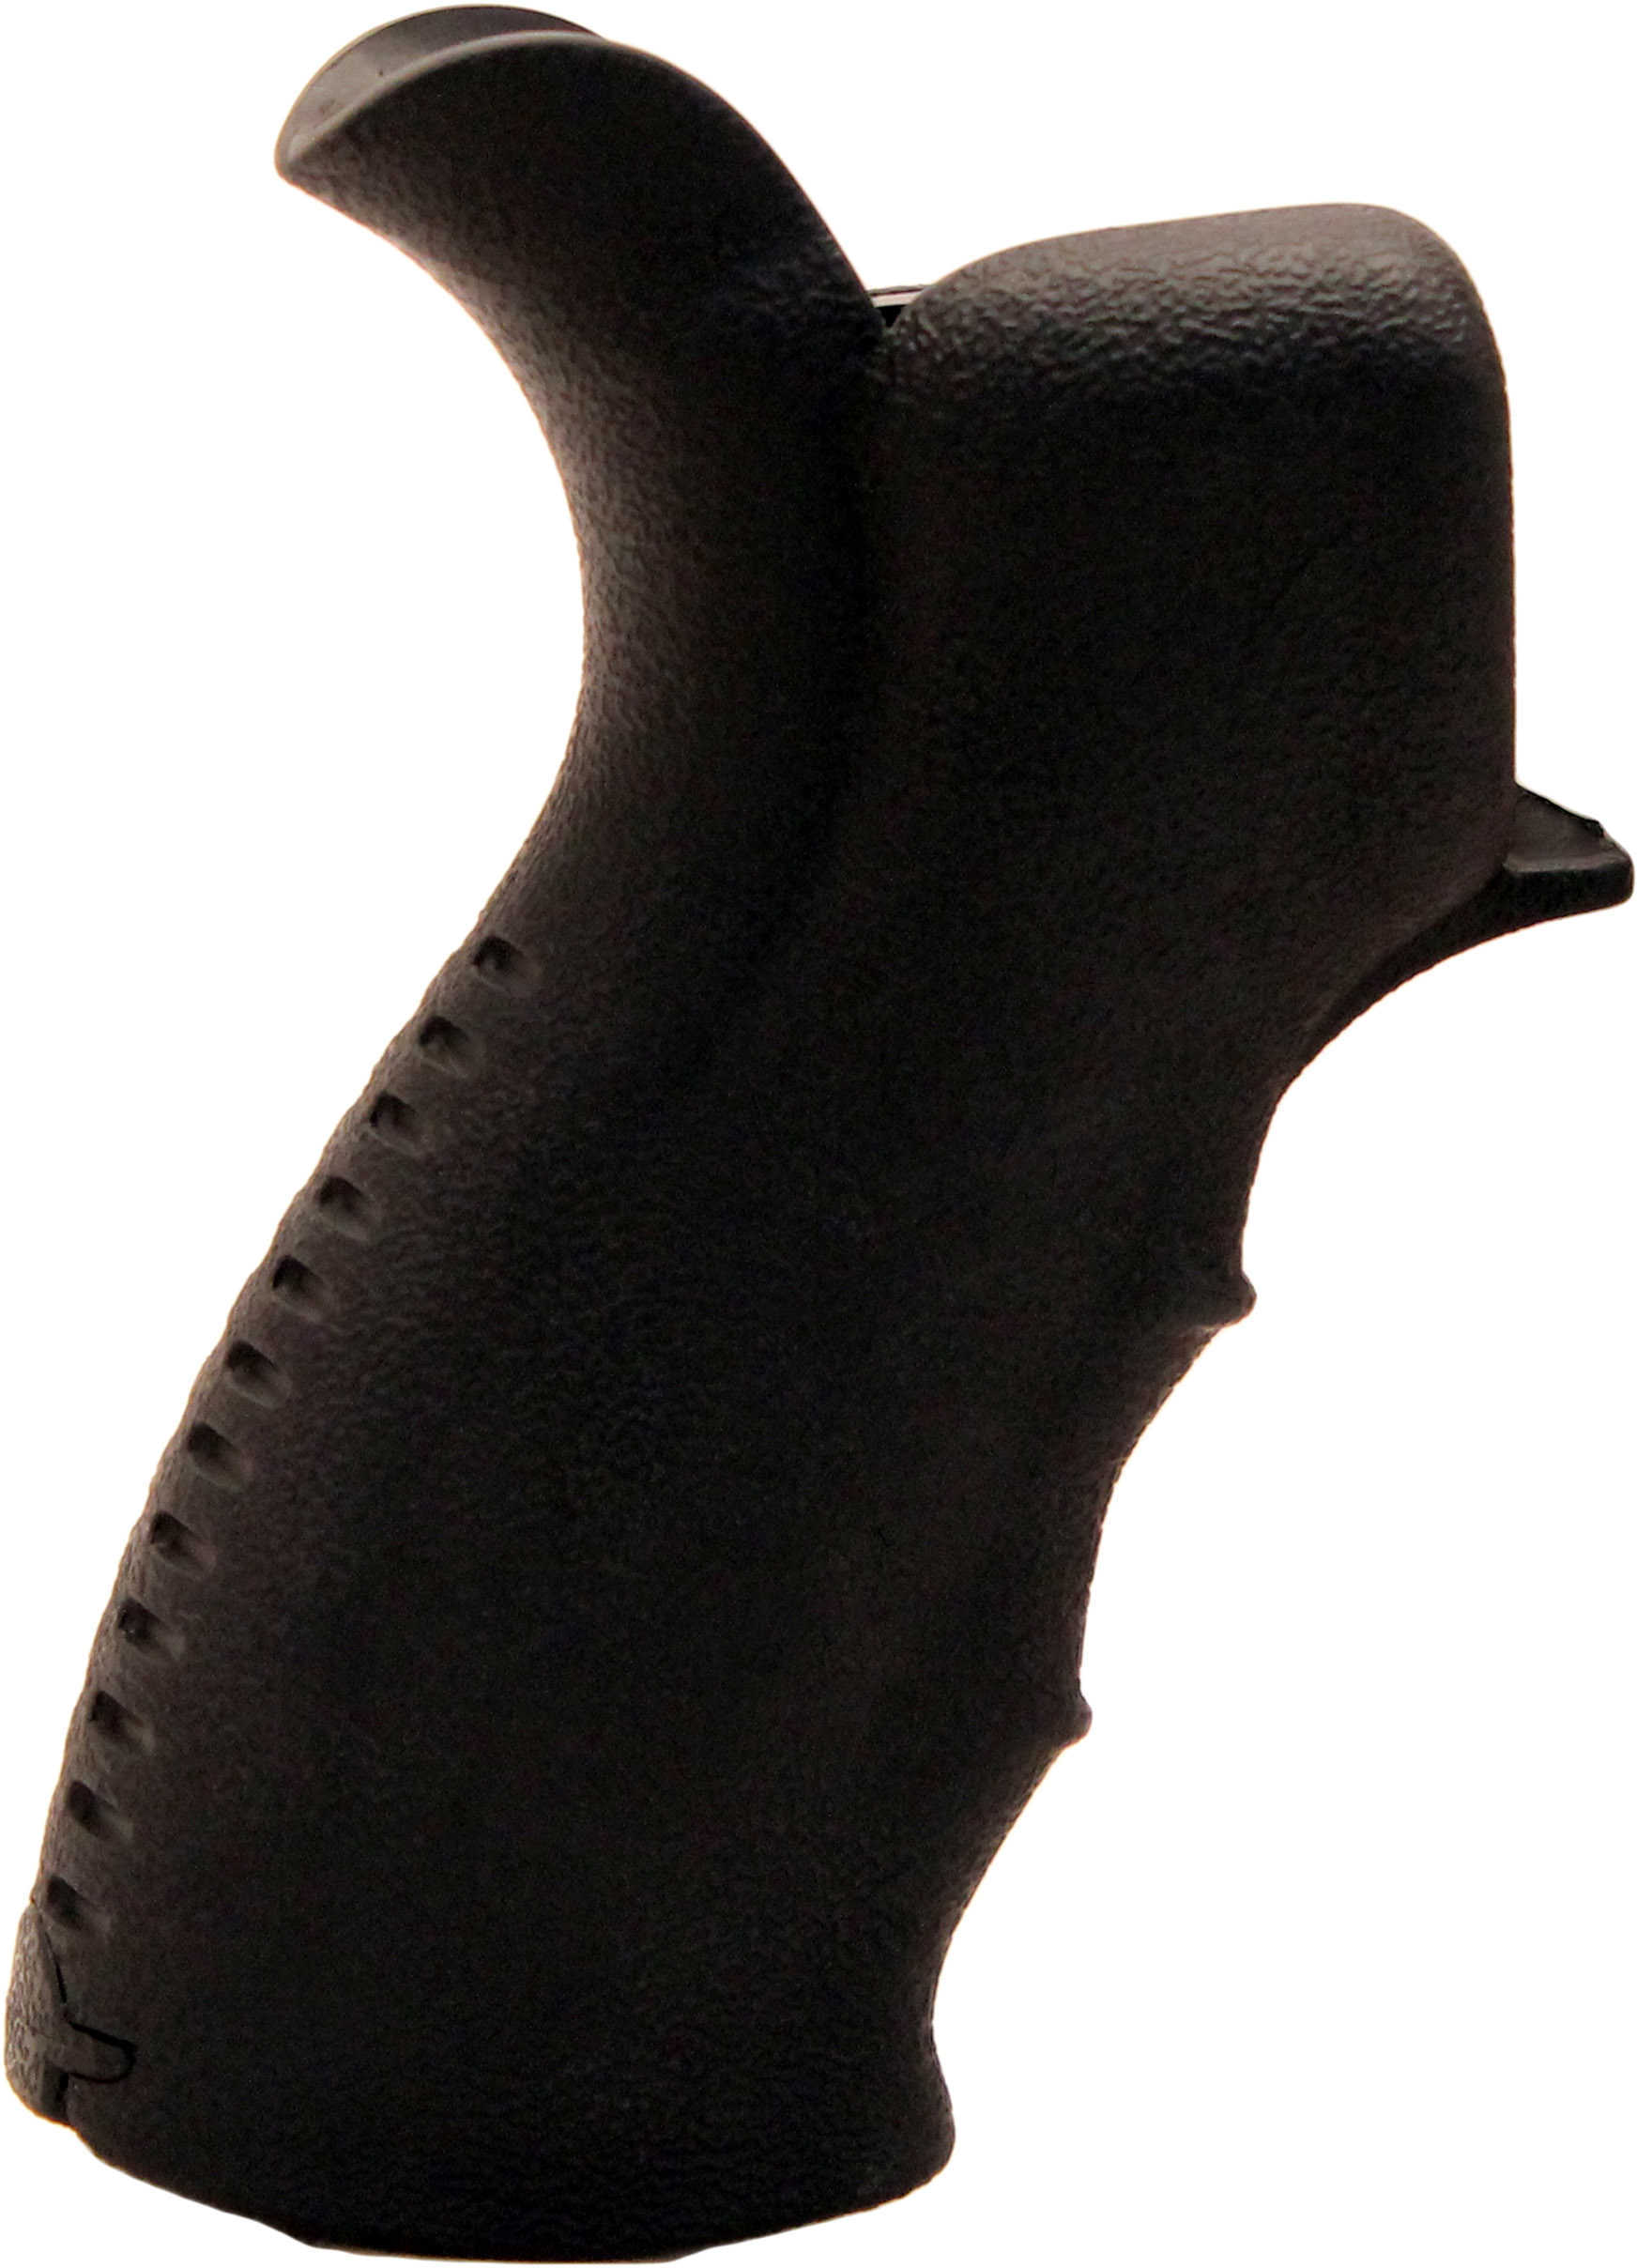 Leapers UTG Model 4/15 Ergonomic Pistol Grips - Bl-img-1